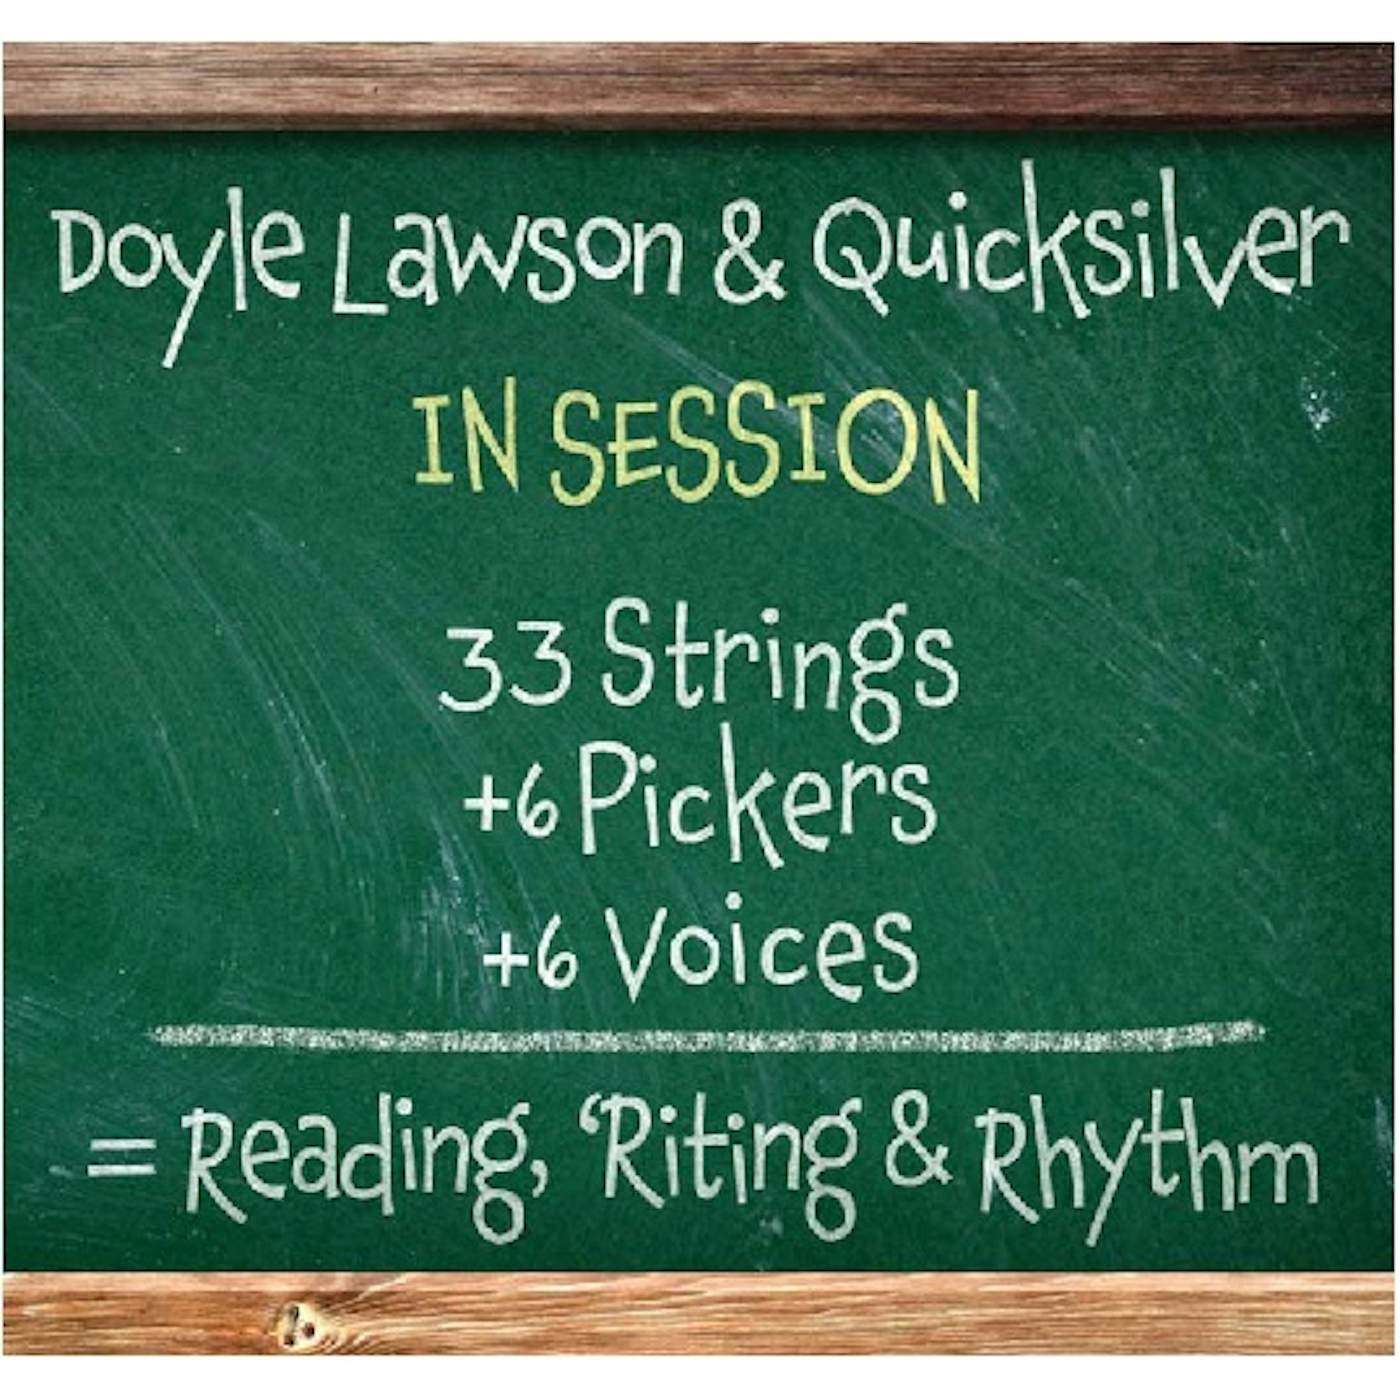 Doyle Lawson & Quicksilver IN SESSION CD